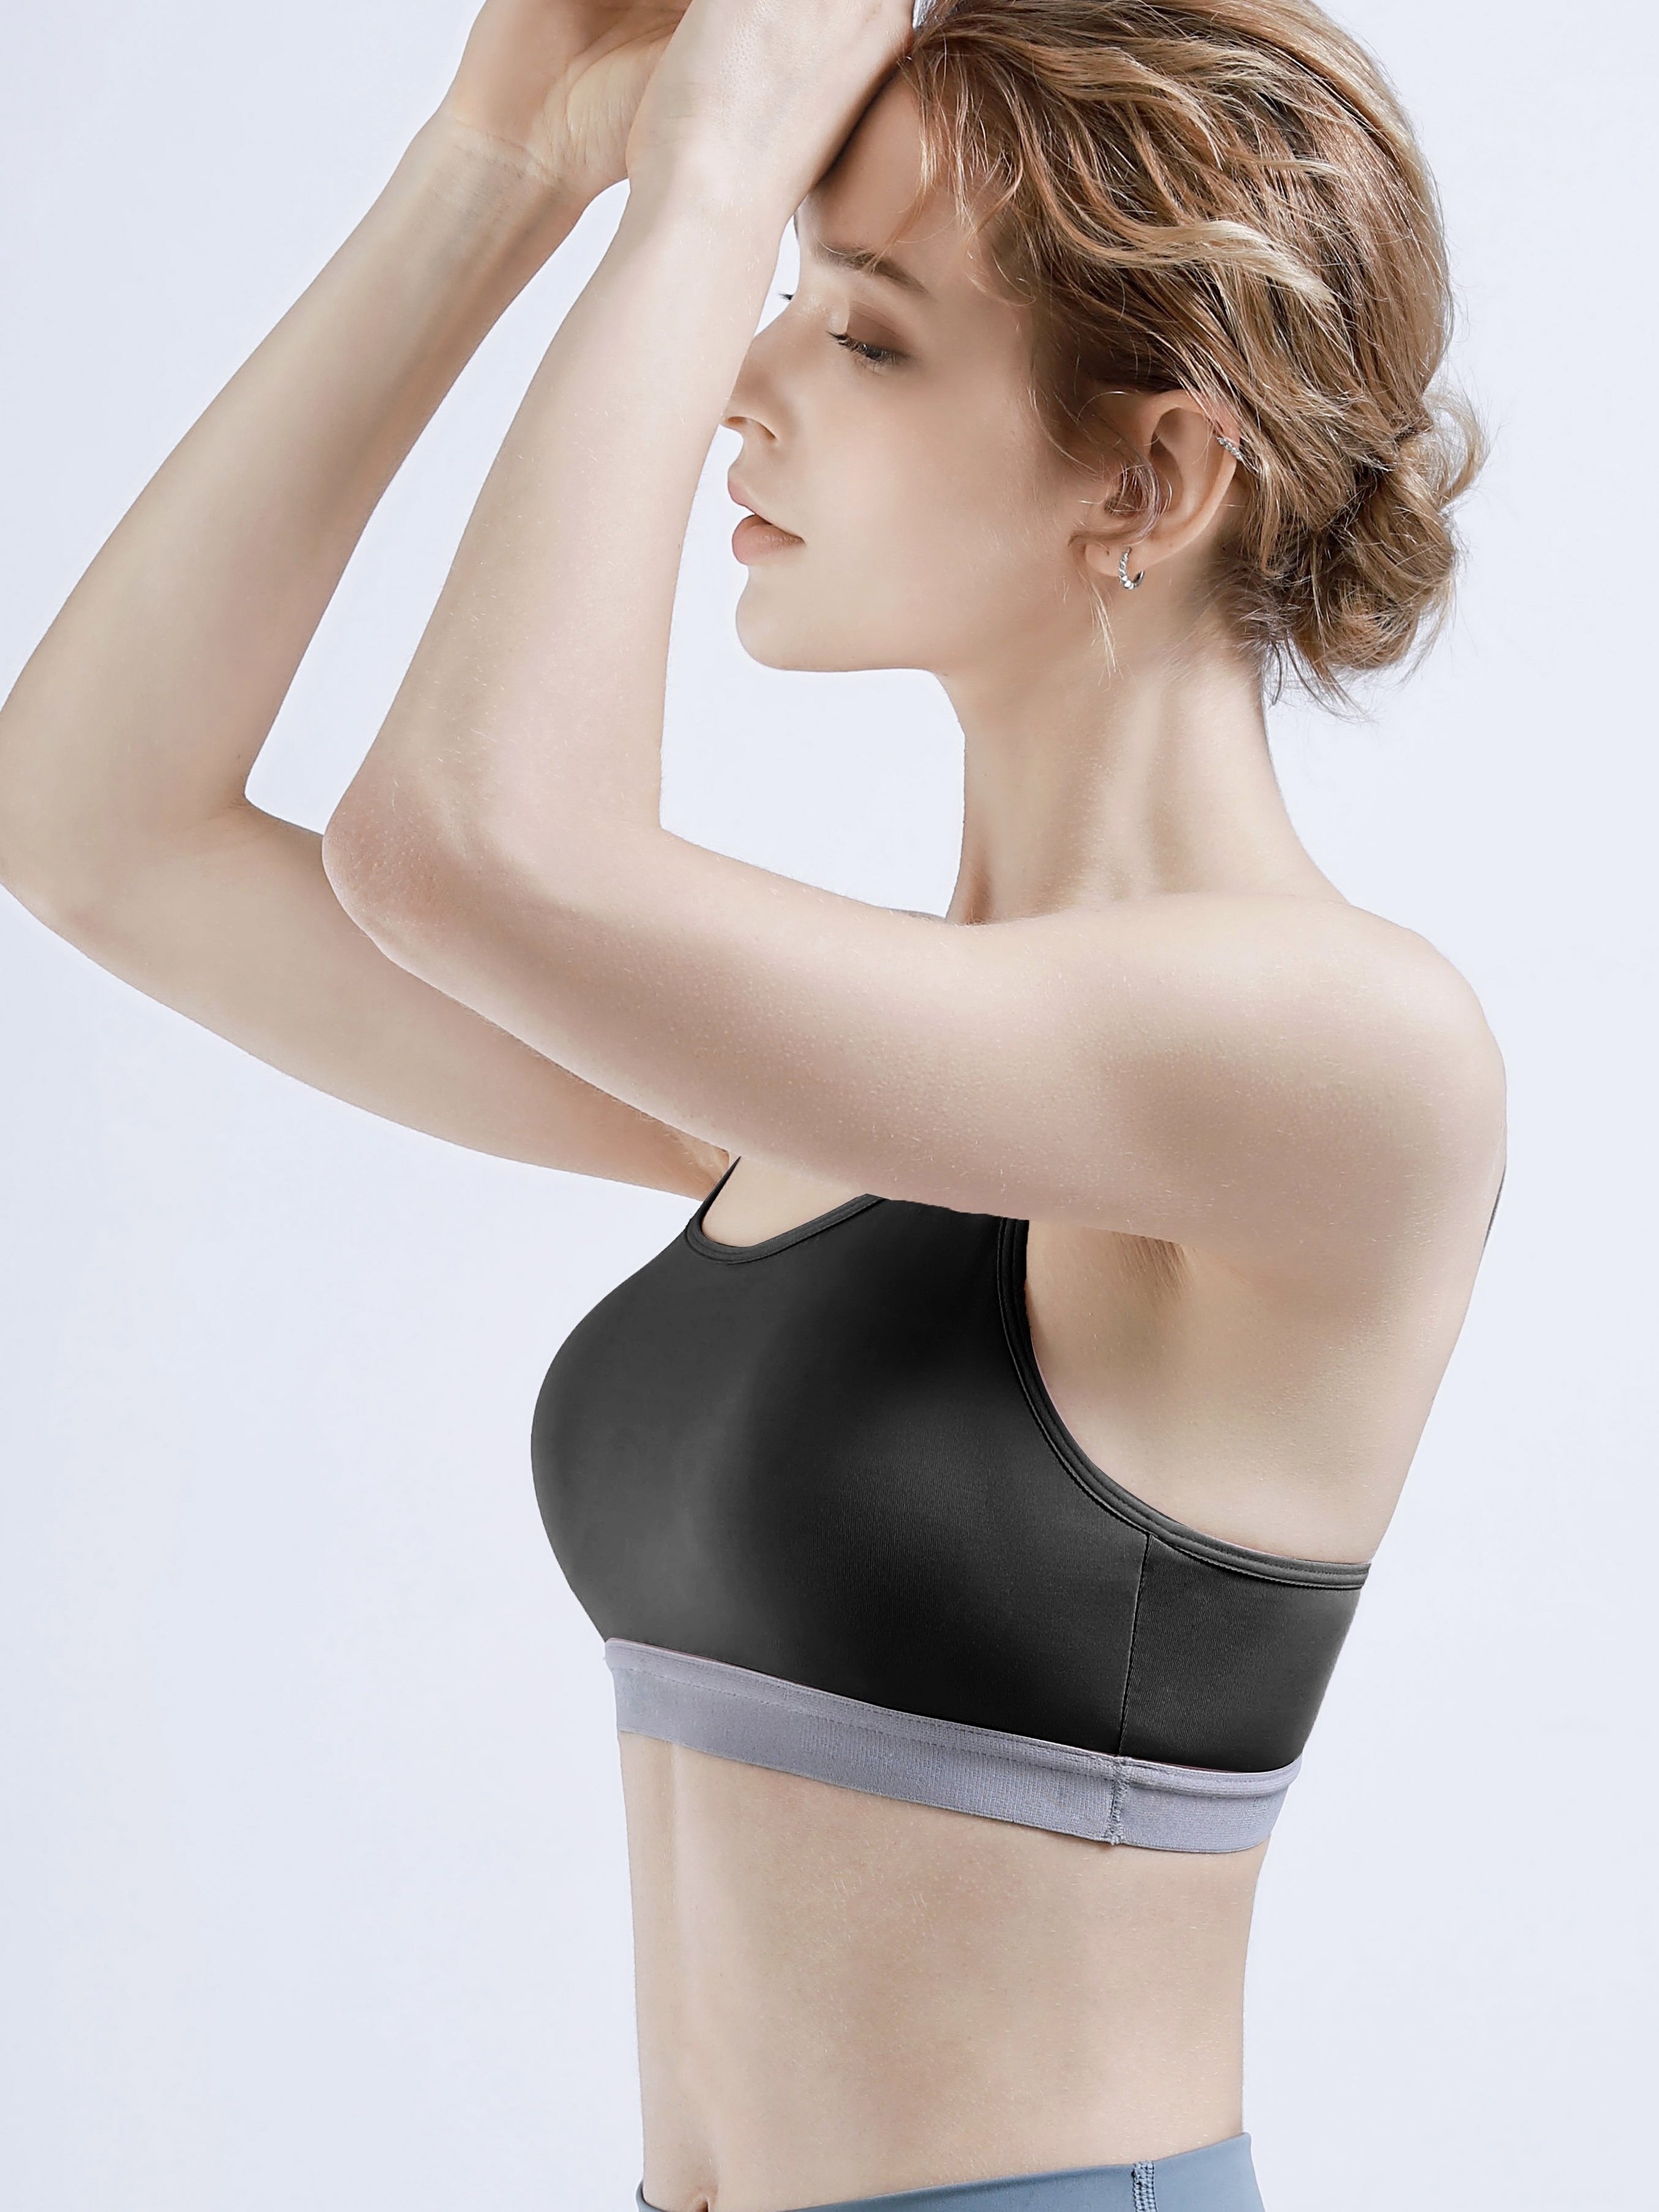 Women sports bra seamless contrast color wireless underwear